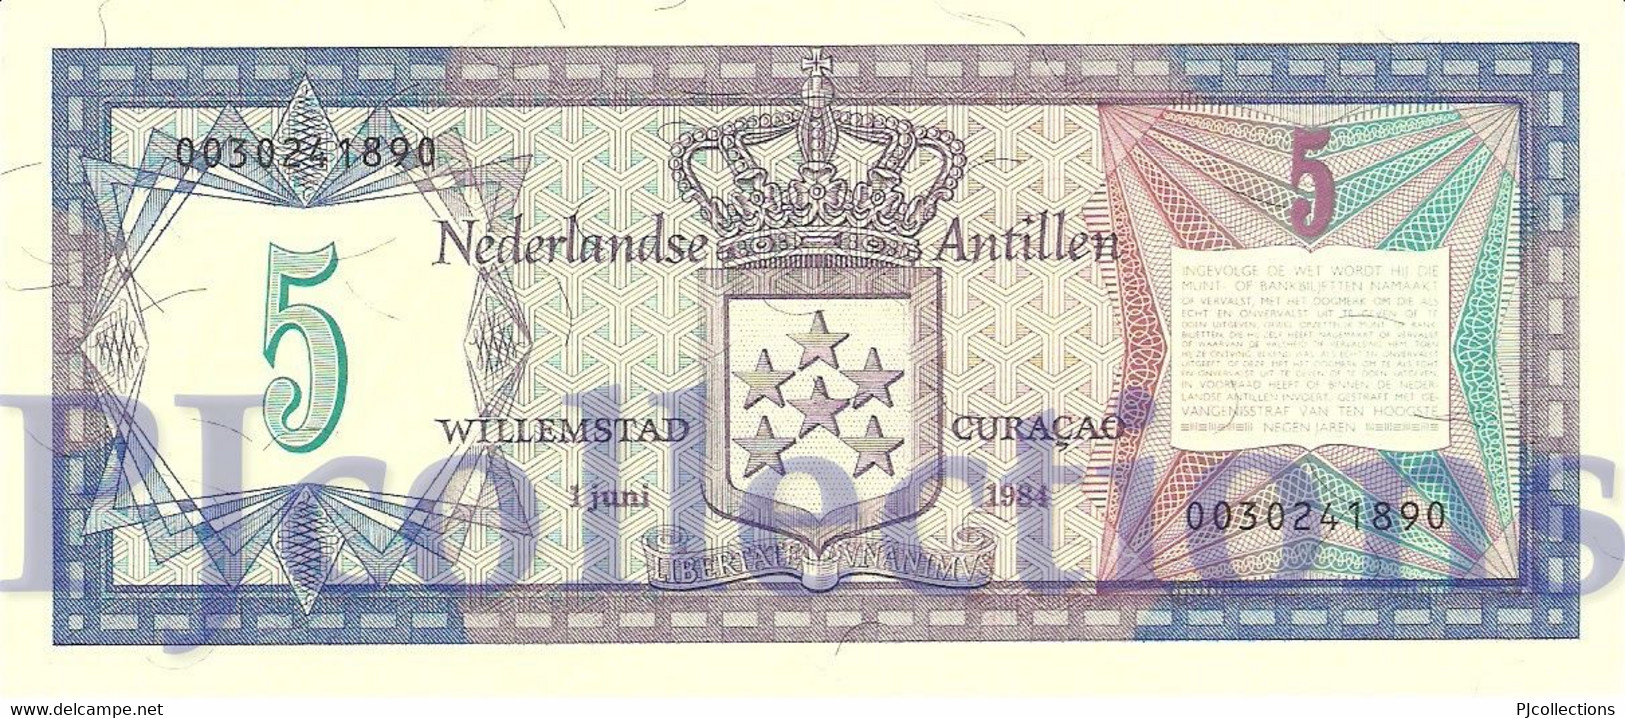 NETHERLANDS ANTILLES 5 GULDEN 1984 PICK 15b UNC - Niederländische Antillen (...-1986)